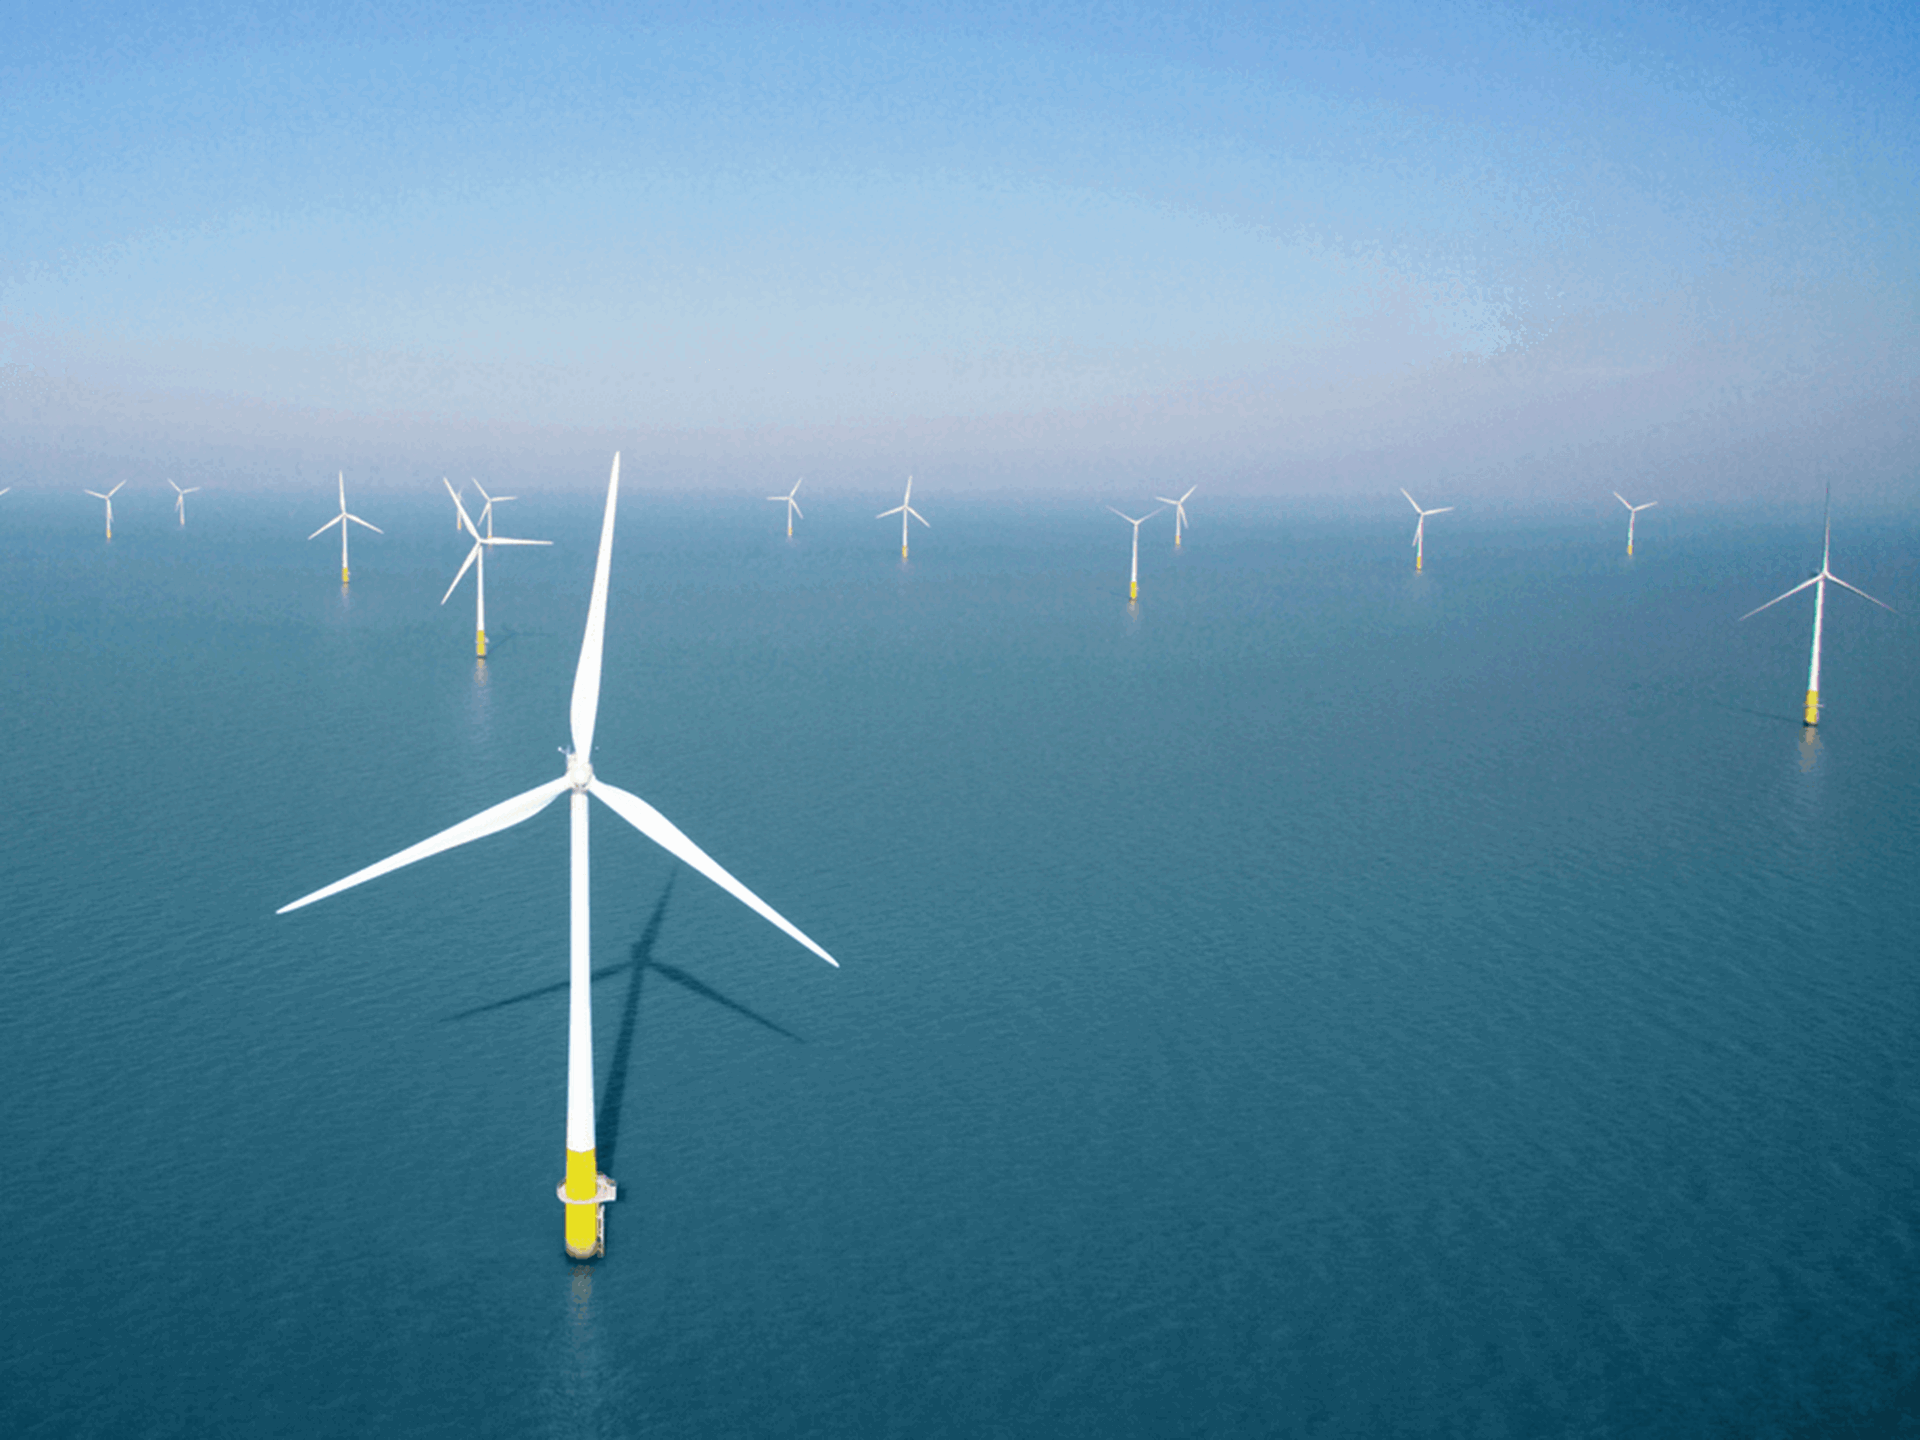 Talloze windmolens in een windpark op zee